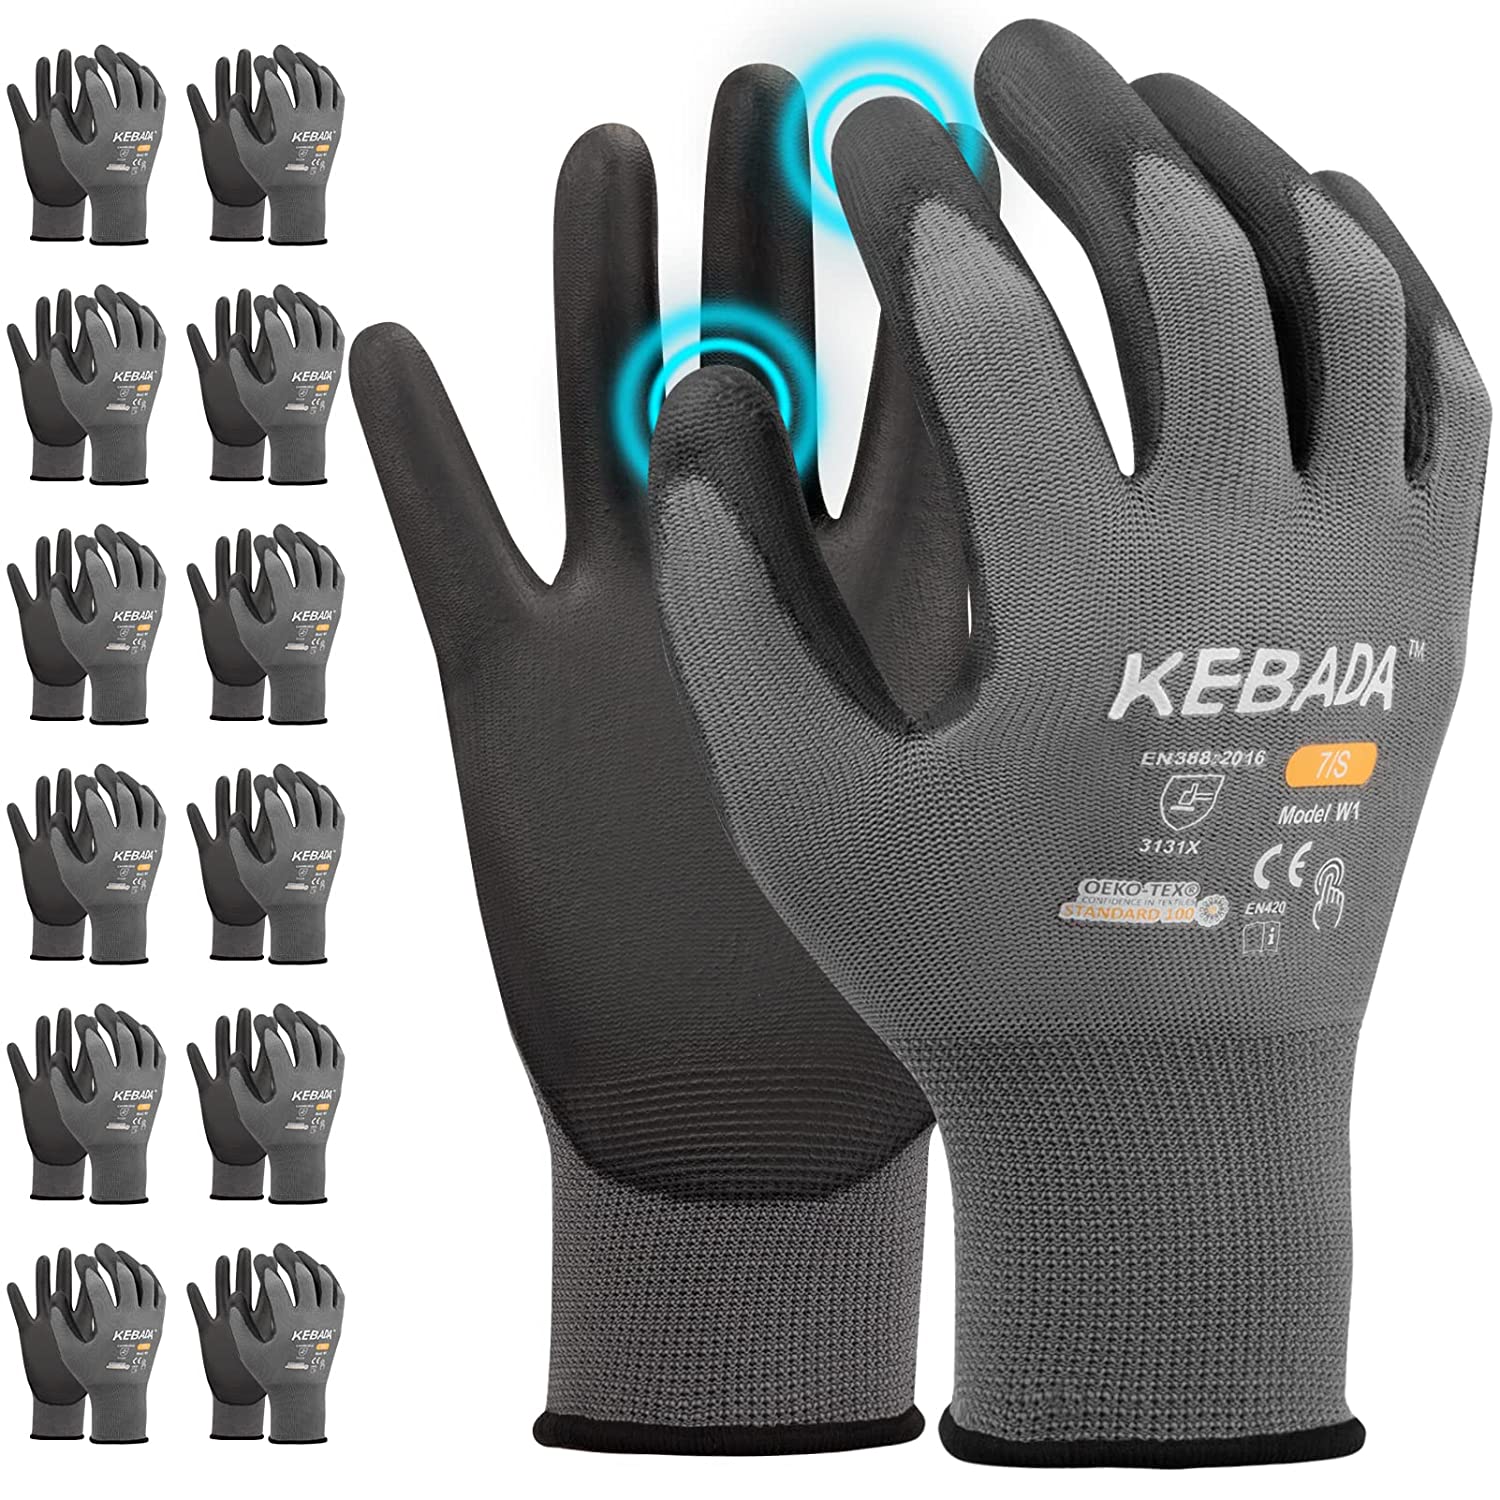 Kebada W1 Work Gloves for Men and Women,Touchscreen [...]